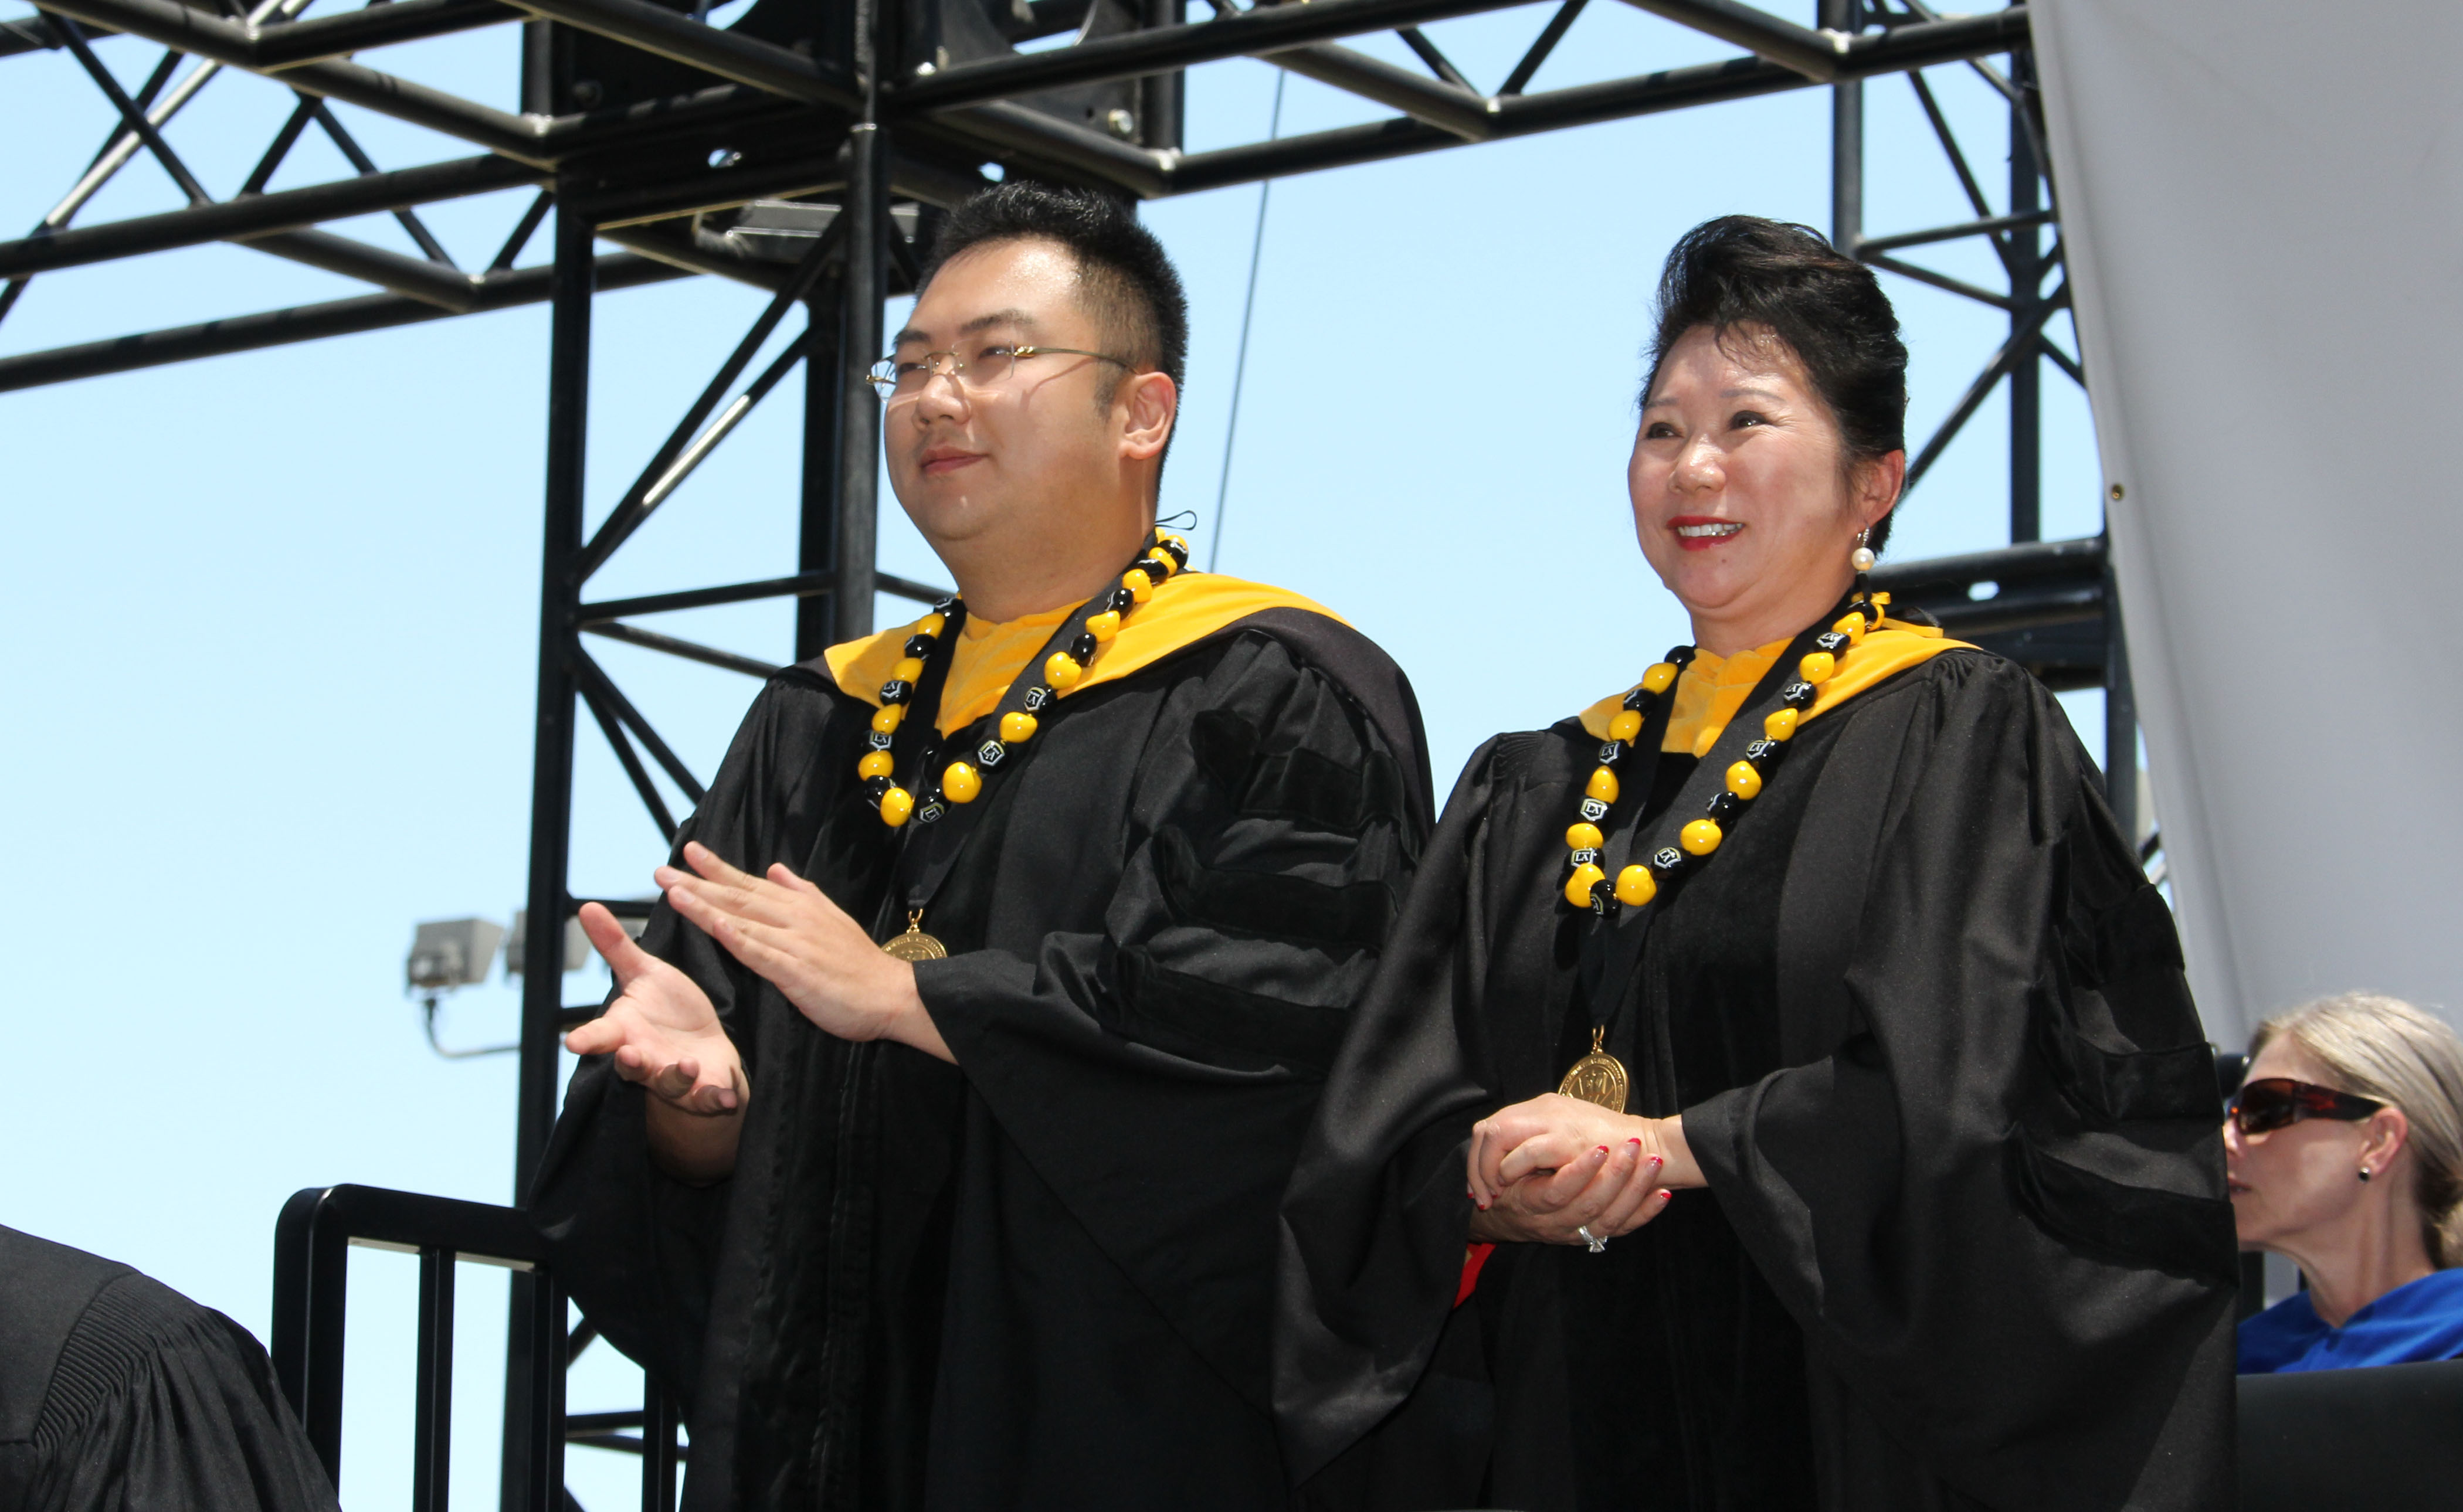 Kevin Xu and Dr. Li Li